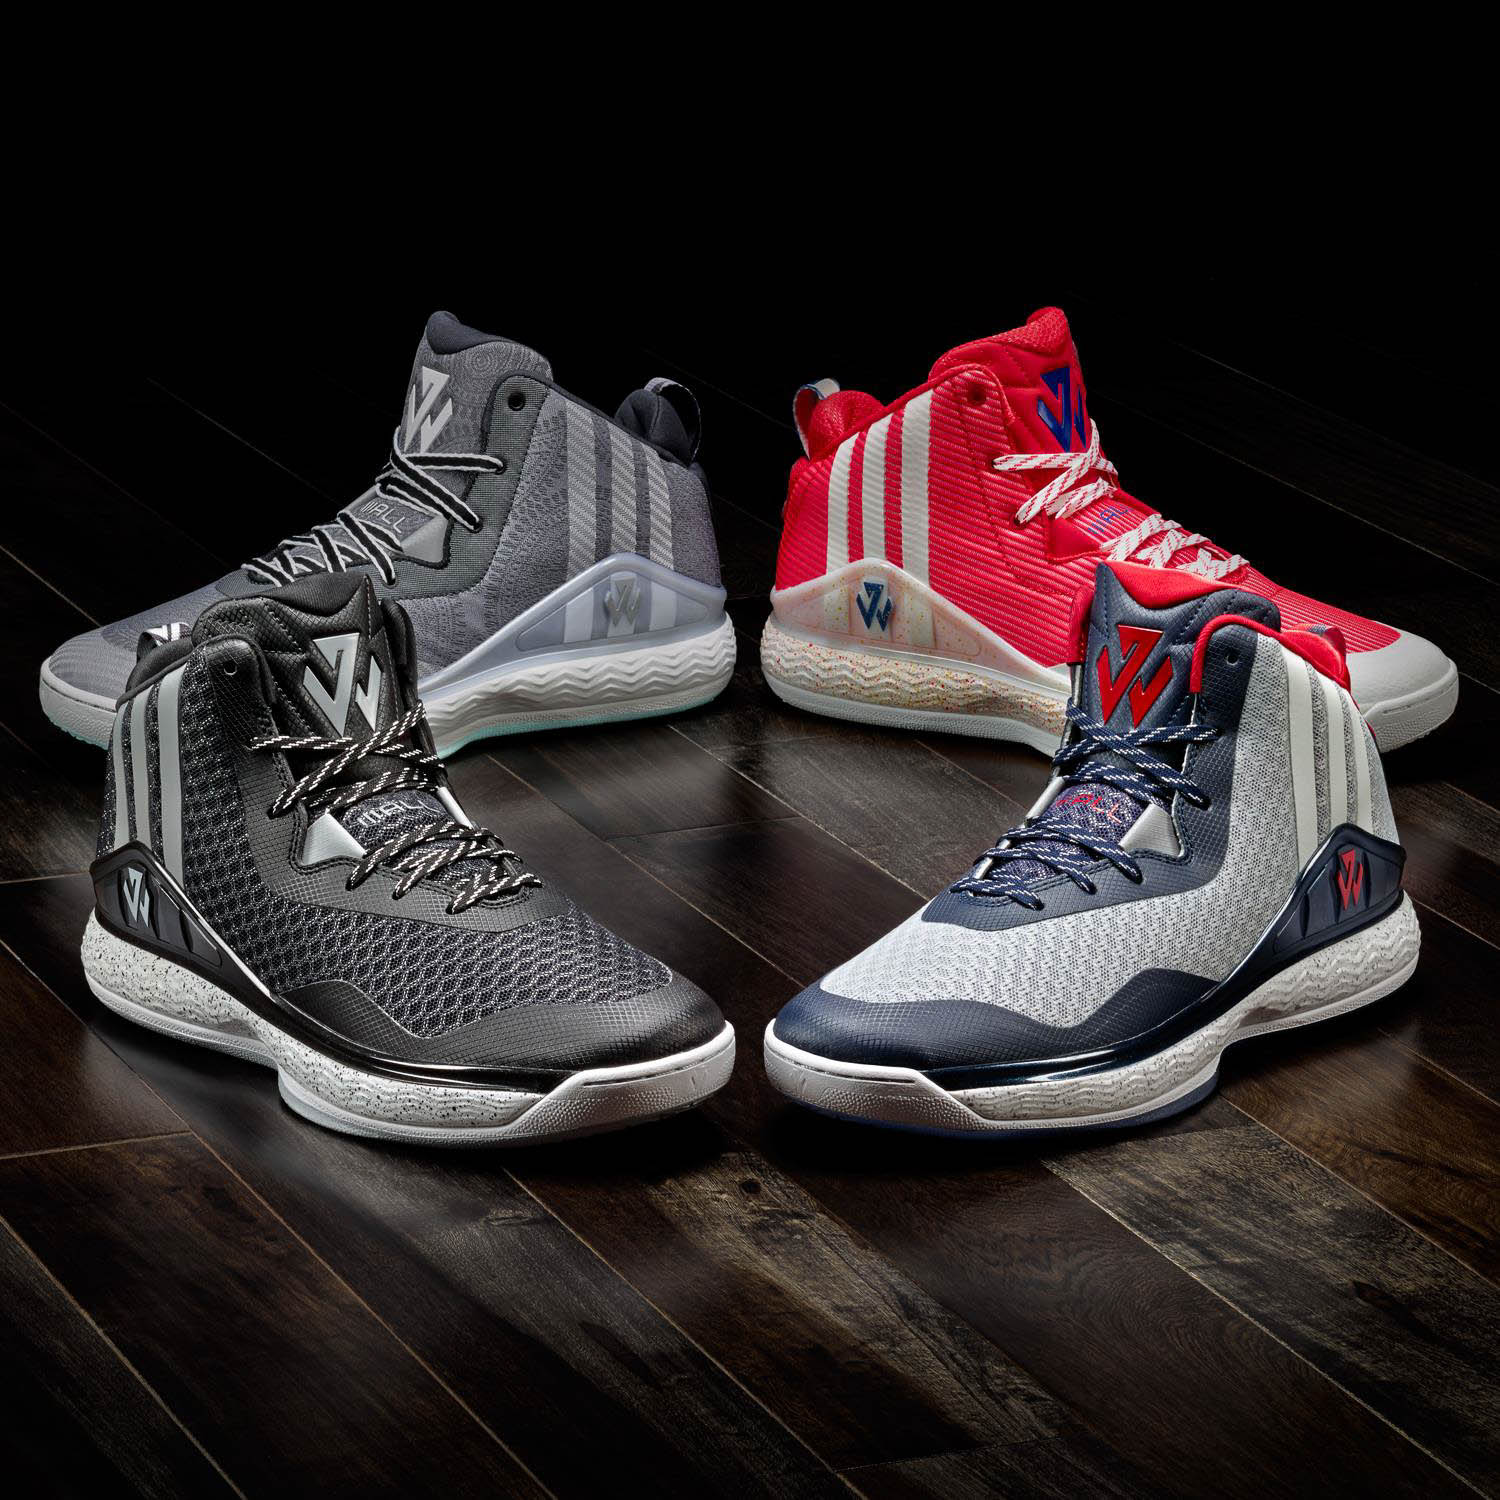 Adidas JWall basketball shoes